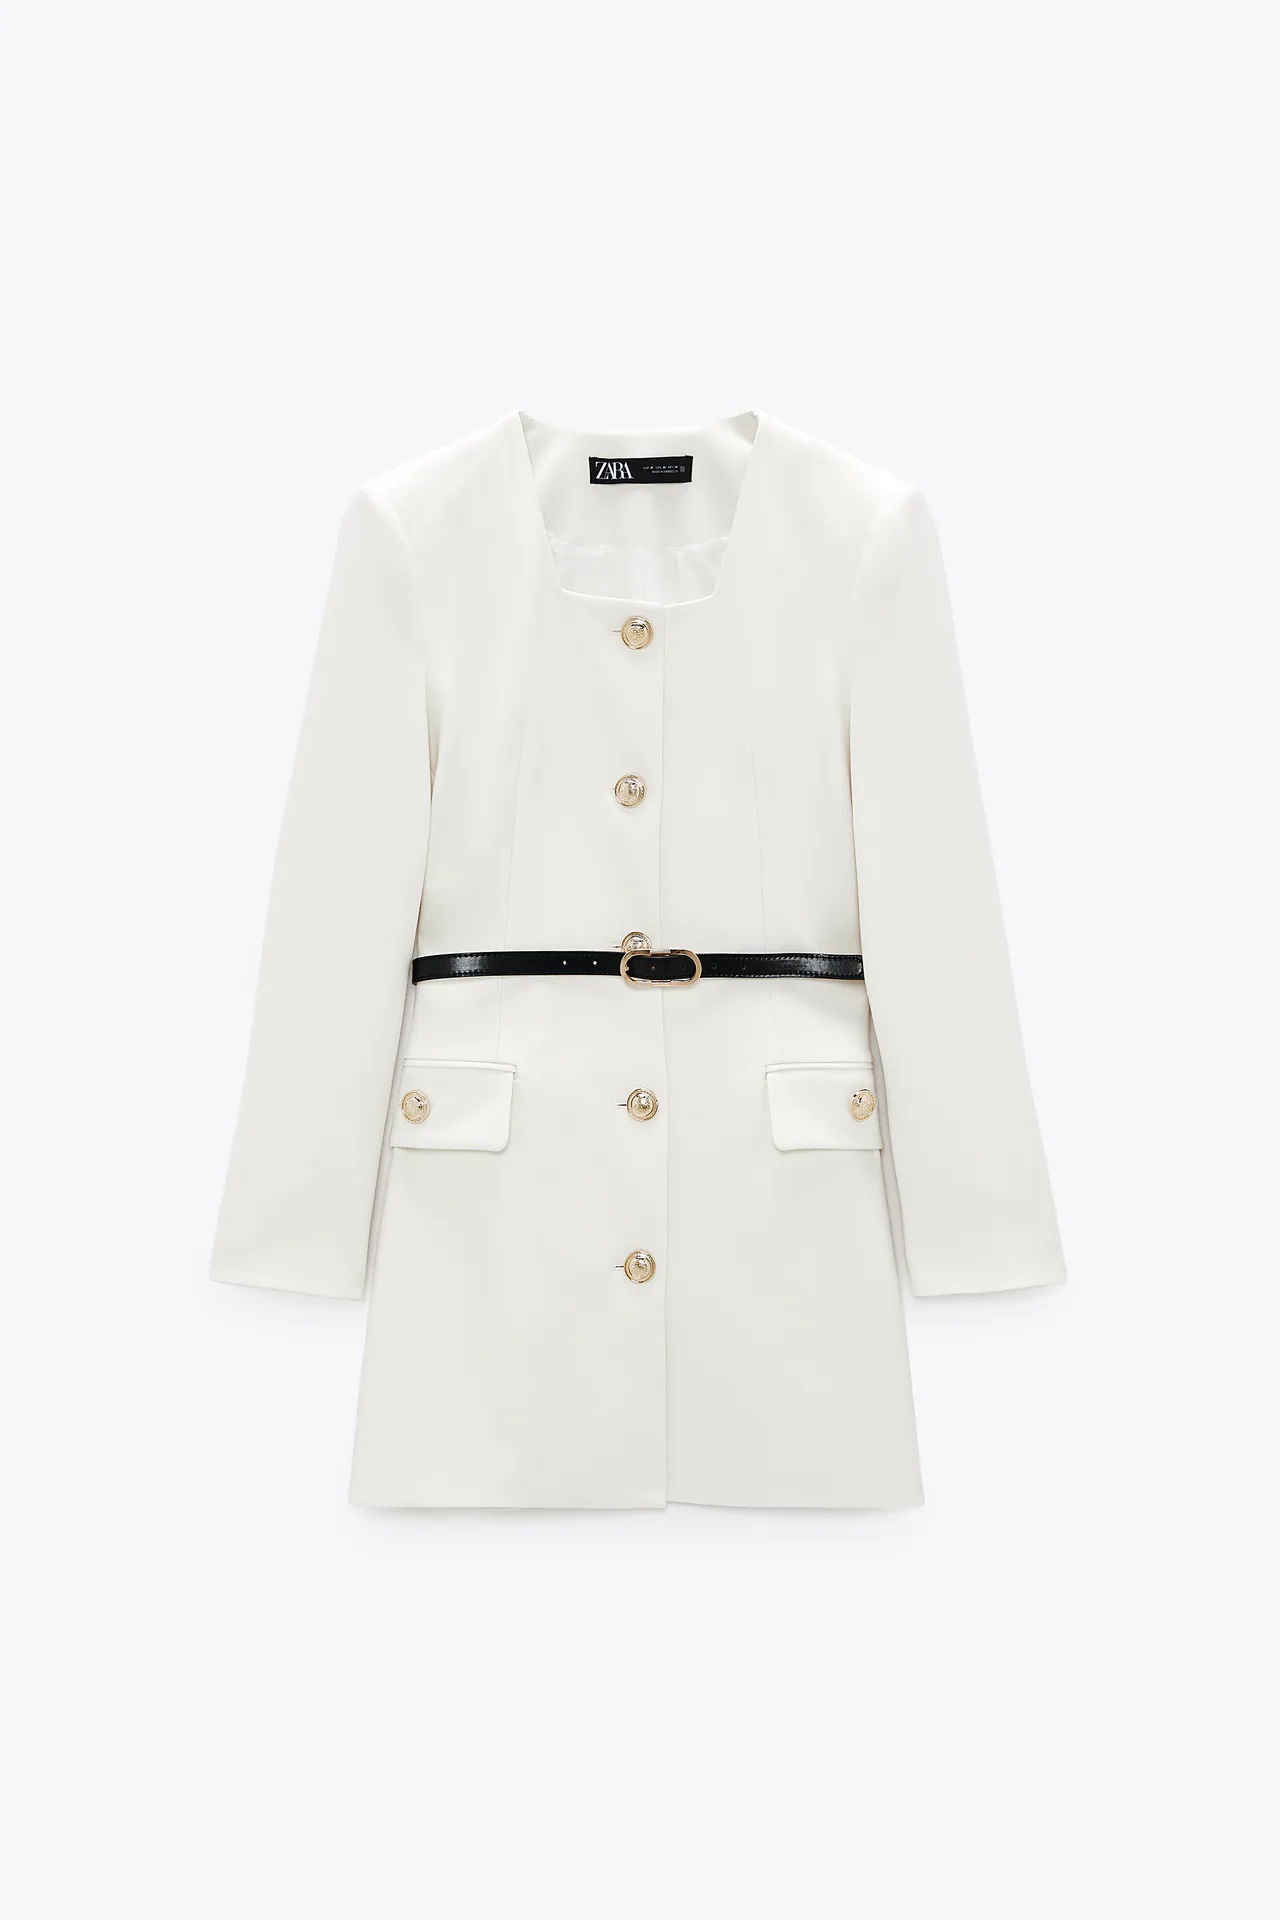 Zara clona el vestido blazer blanco más bonito de la nueva colección de YSL